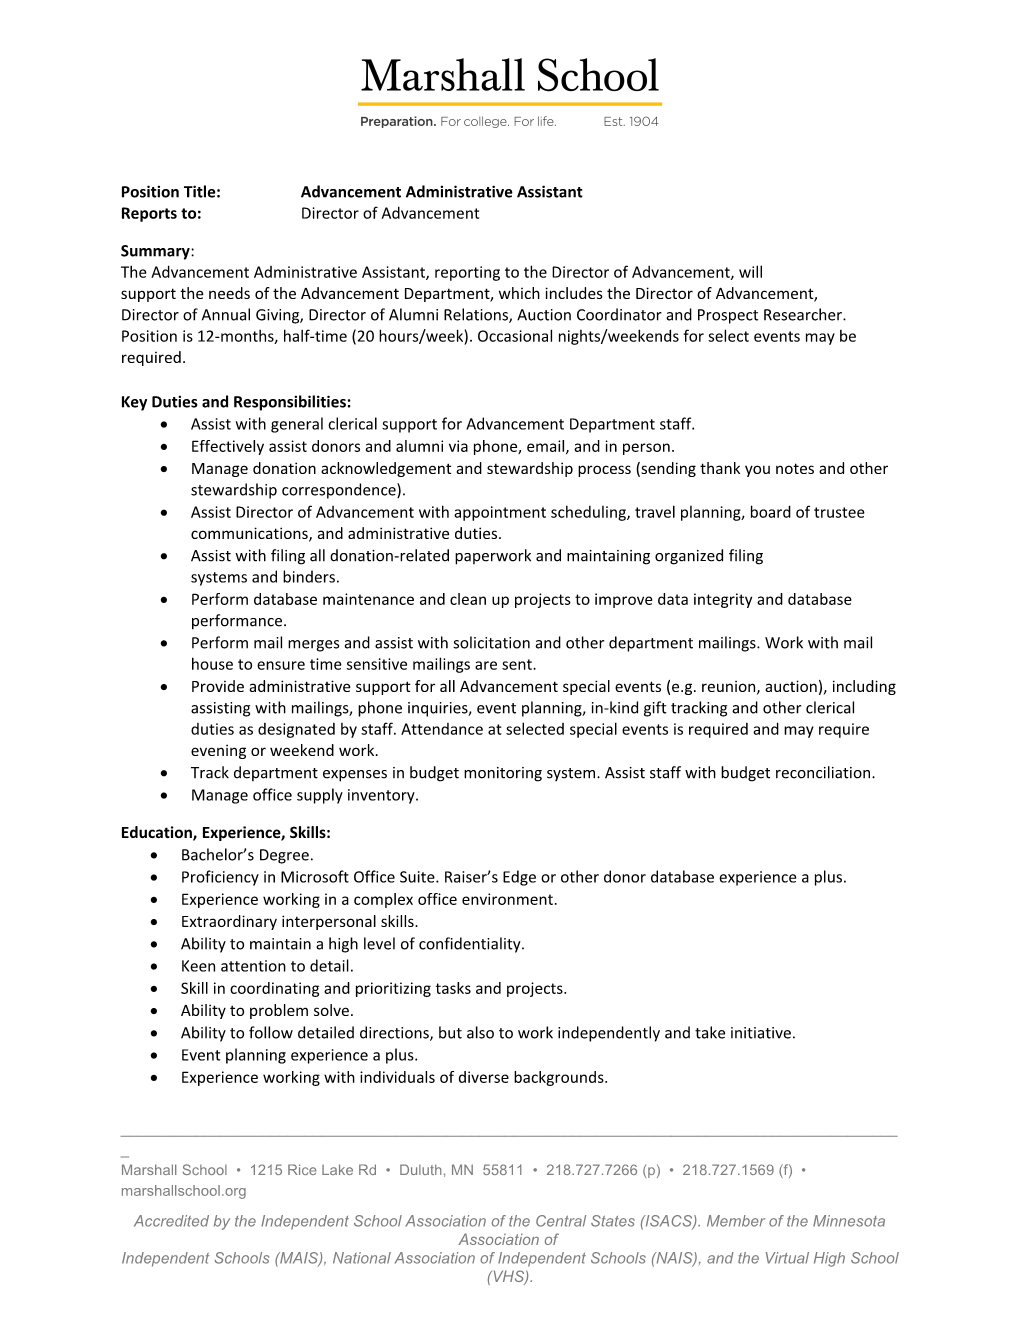 Position Title:Advancement Administrative Assistant